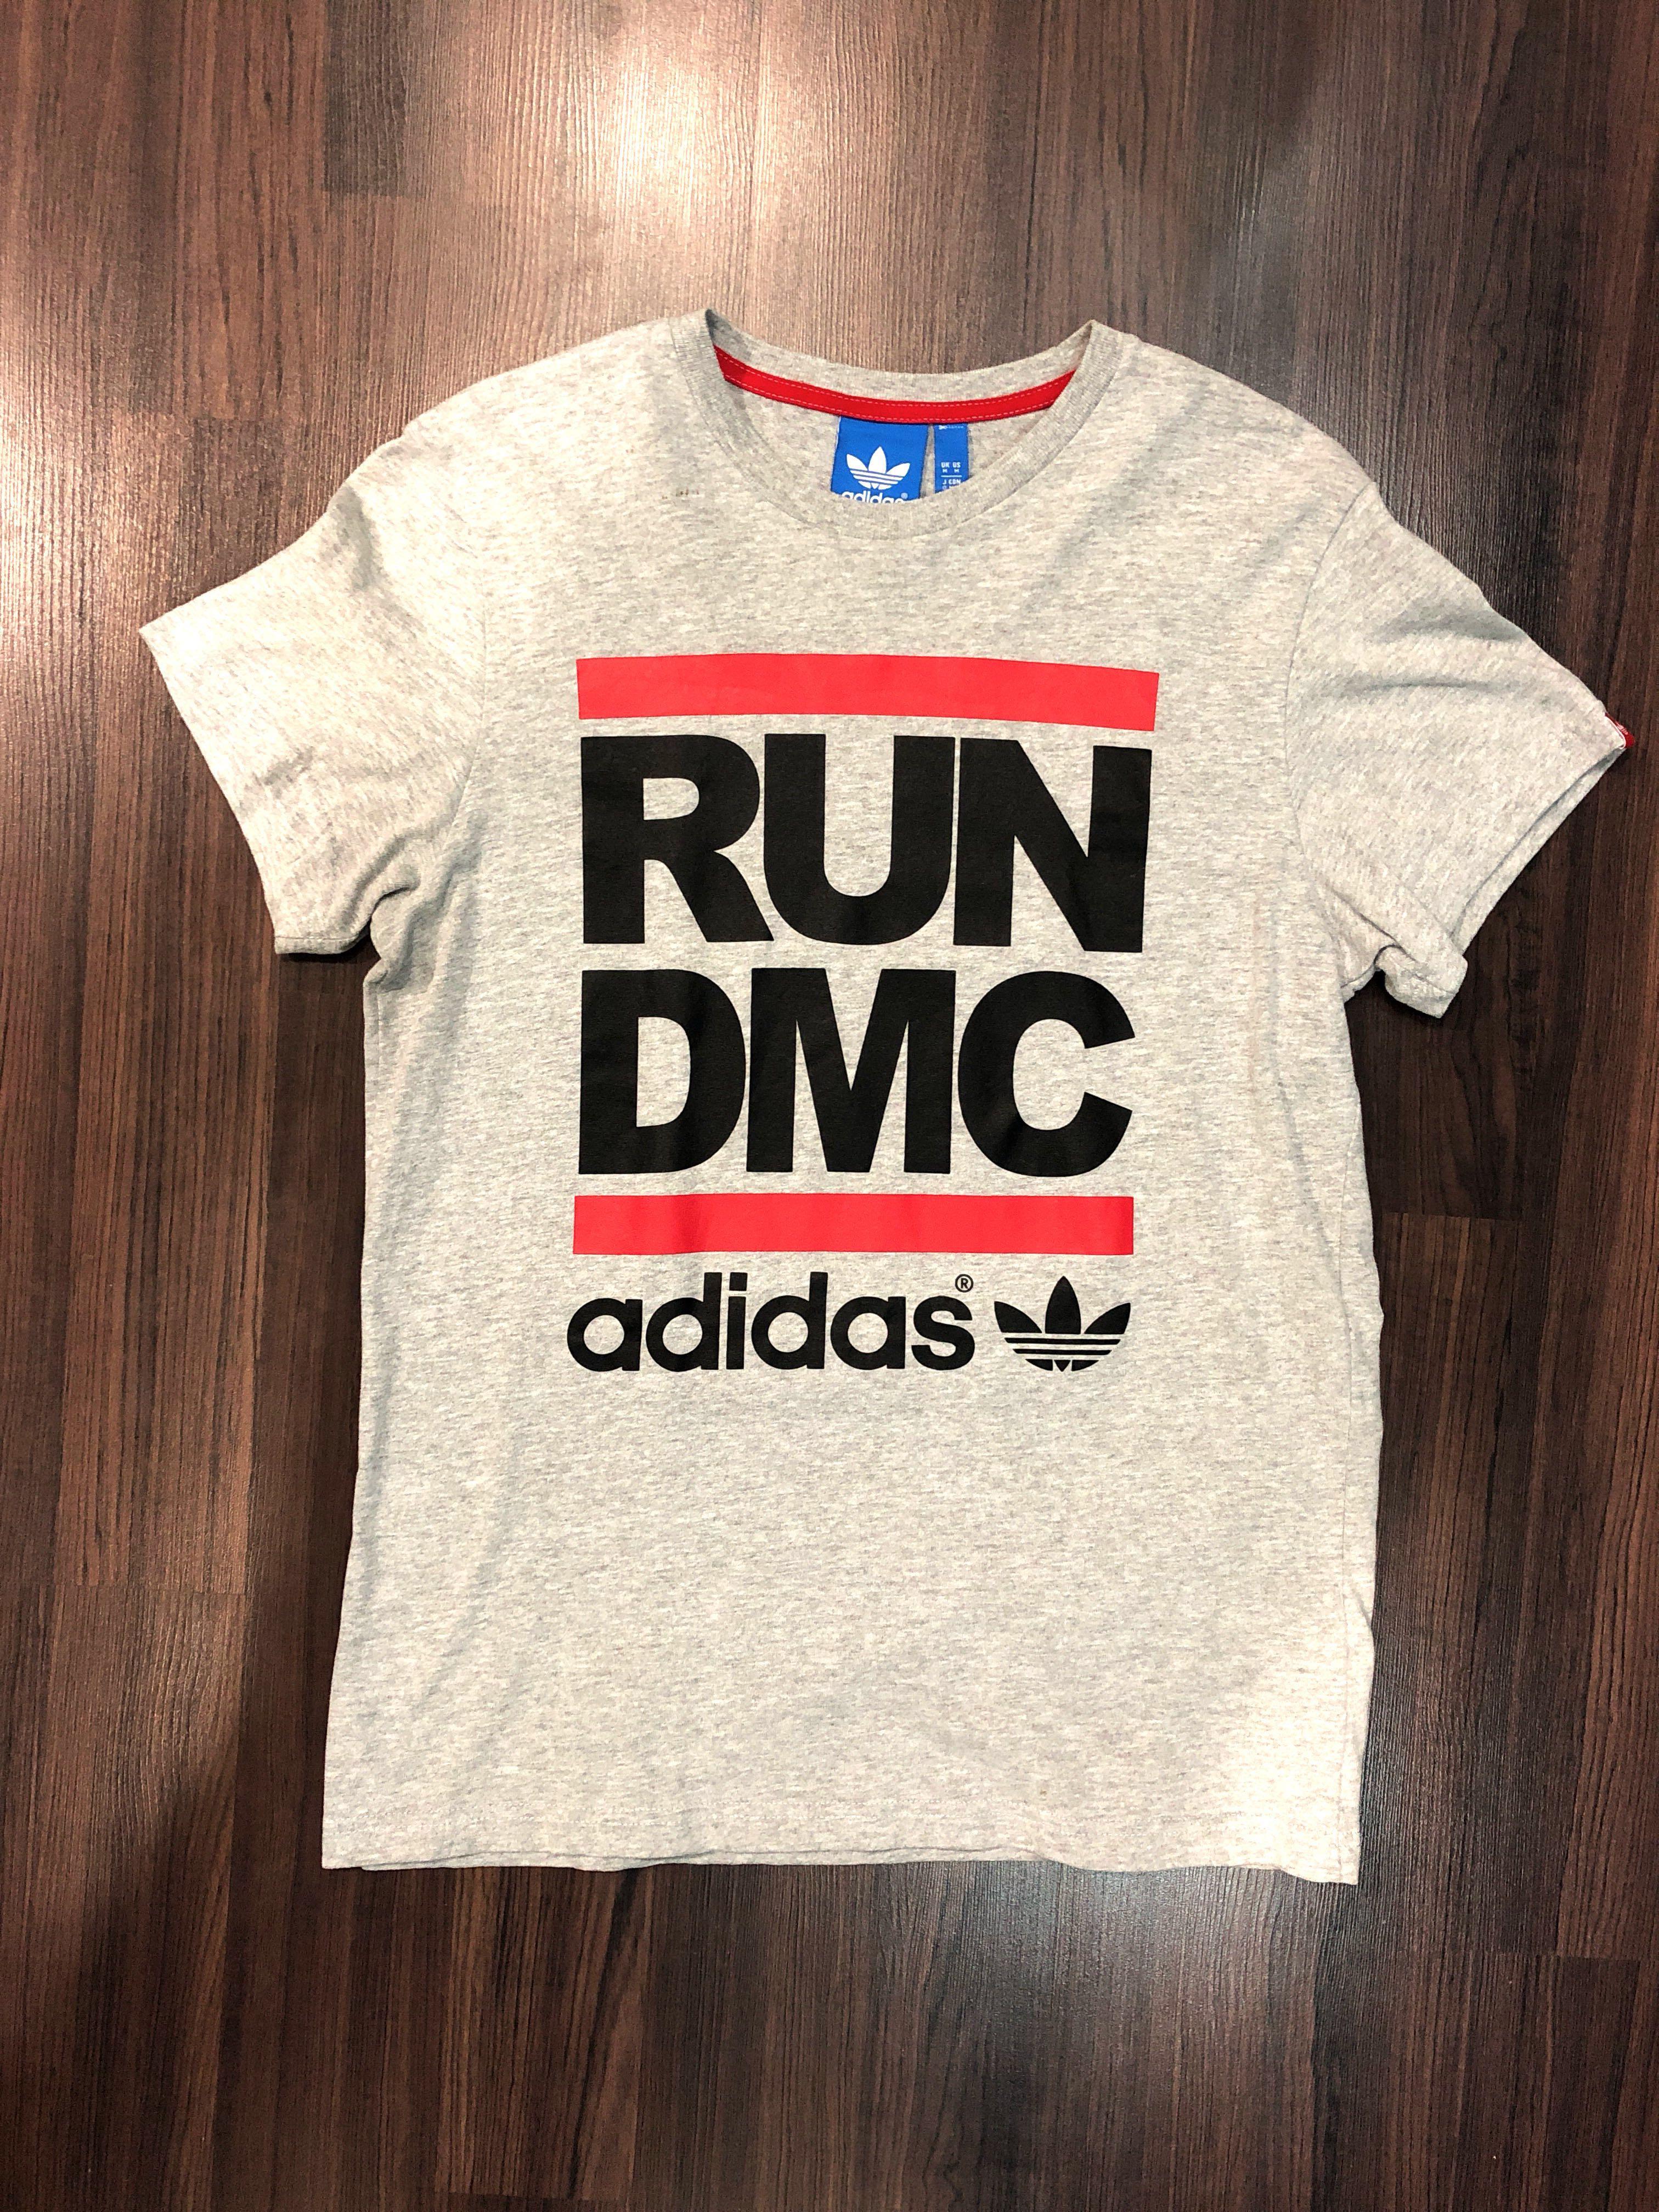 Adidas RUN DMC Shirt, Men's Fashion, Tops & Sets, Tshirts & Polo Shirts on